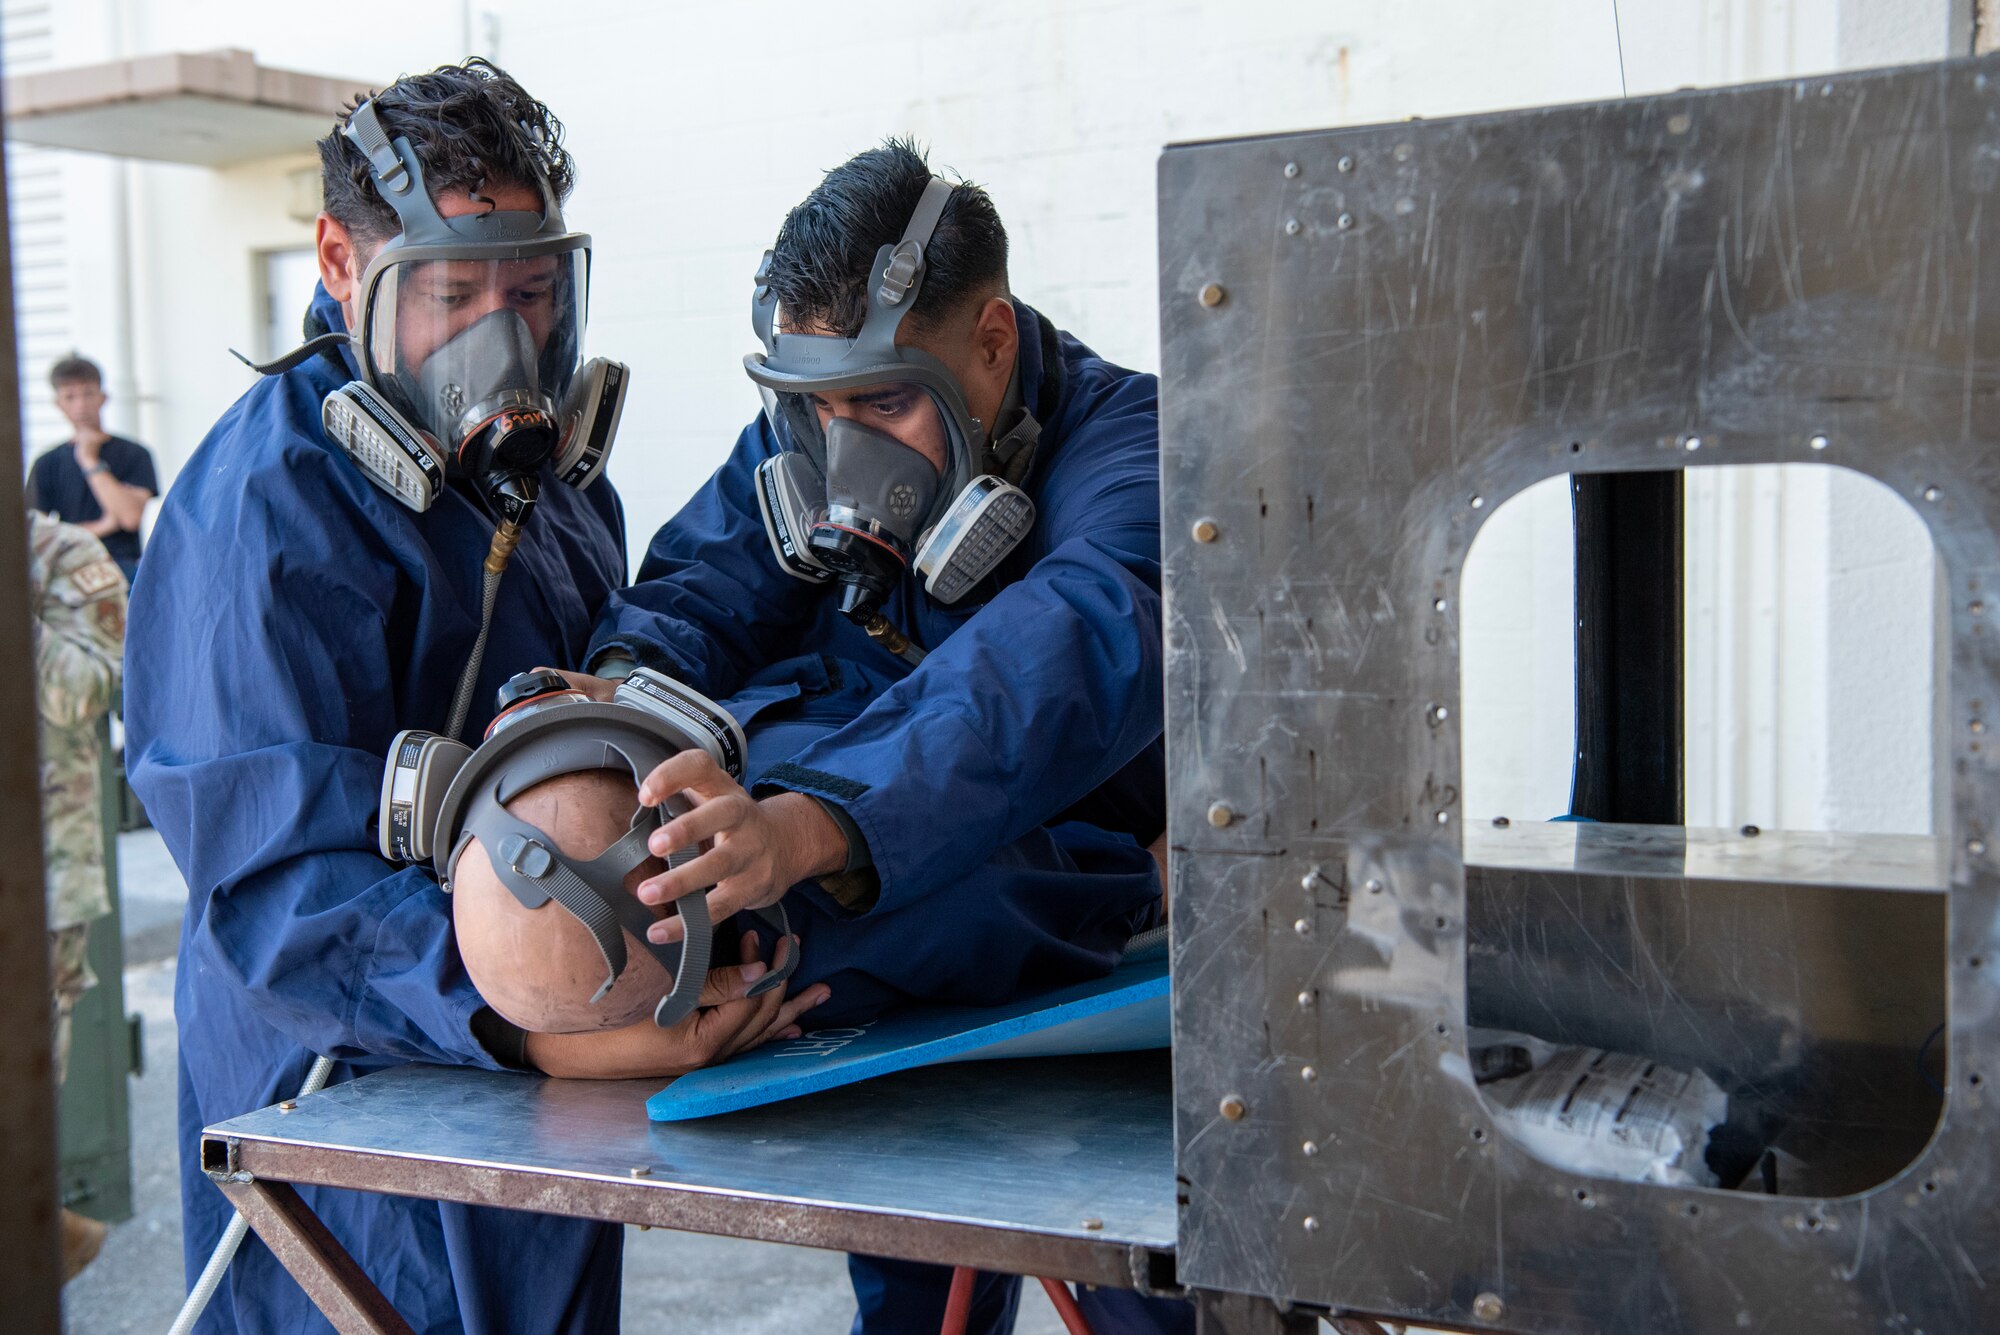 two craftsmen demonstrate extraction procedures on mannequin